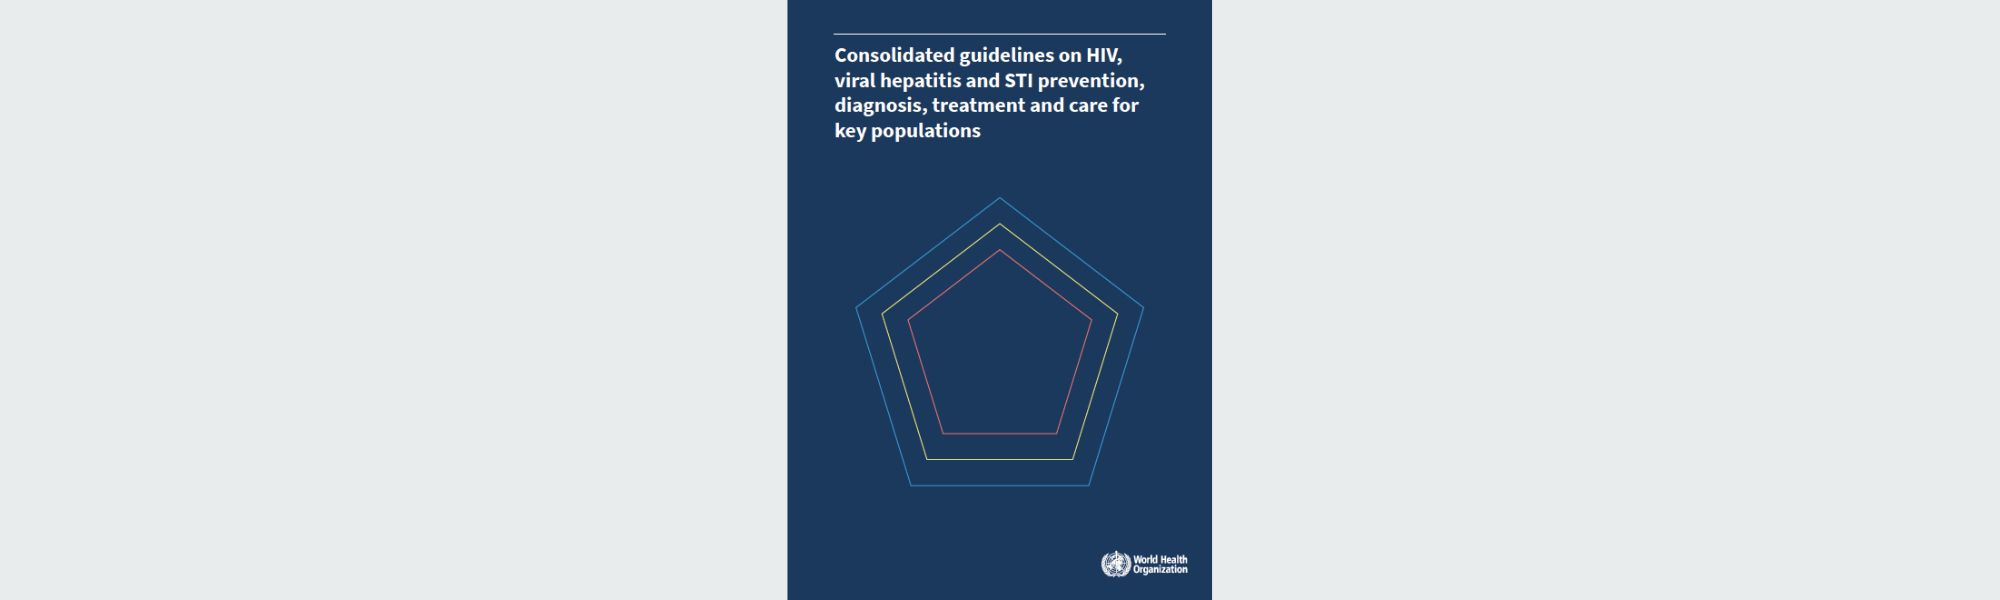 La OMS publica una nueva guía sobre VIH, hepatitis e ITS